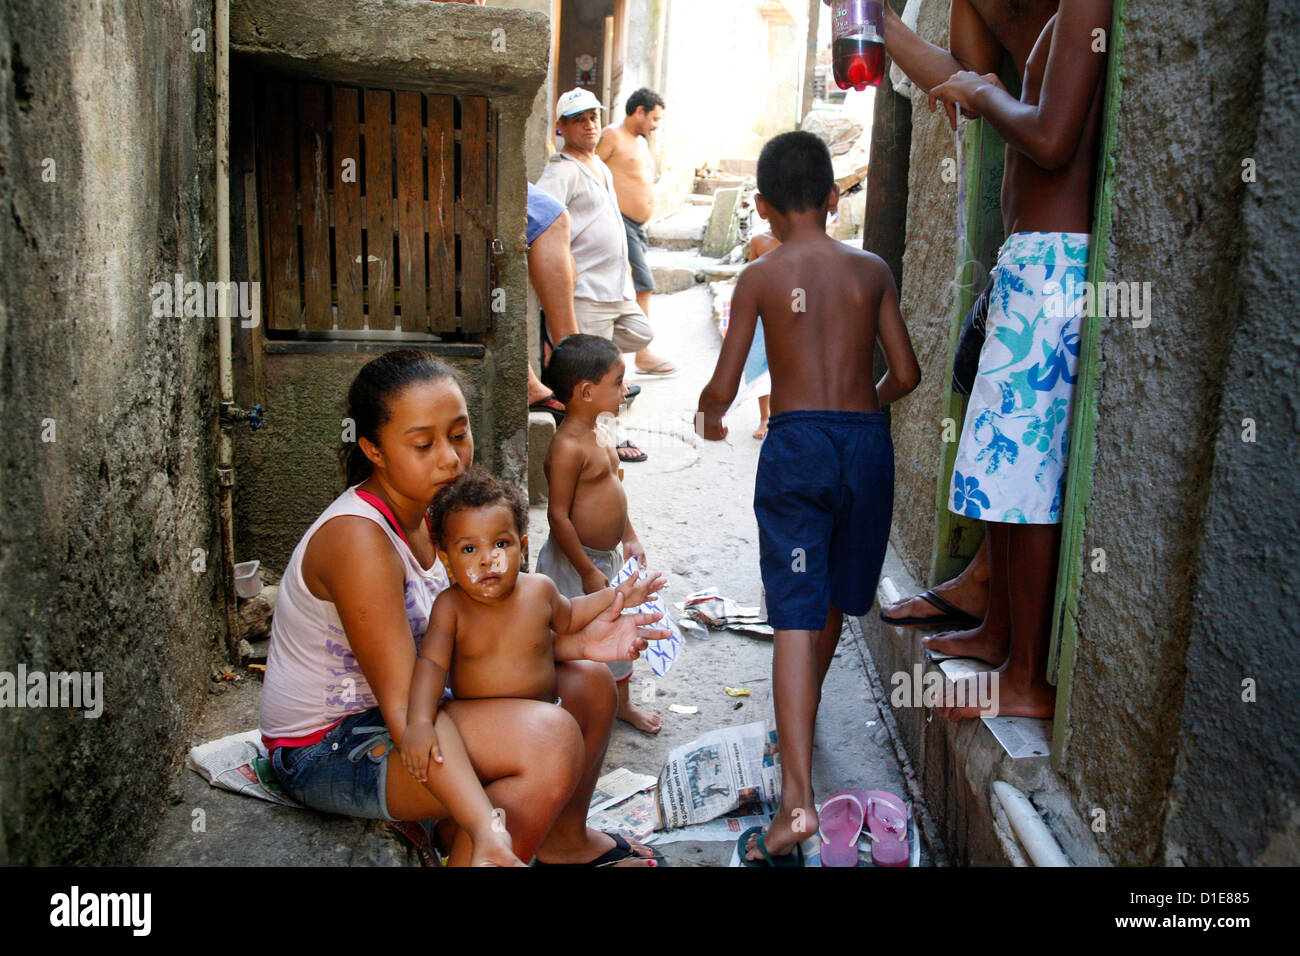 People at Rocinha favela, Rio de Janeiro, Brazil, South America Stock Photo